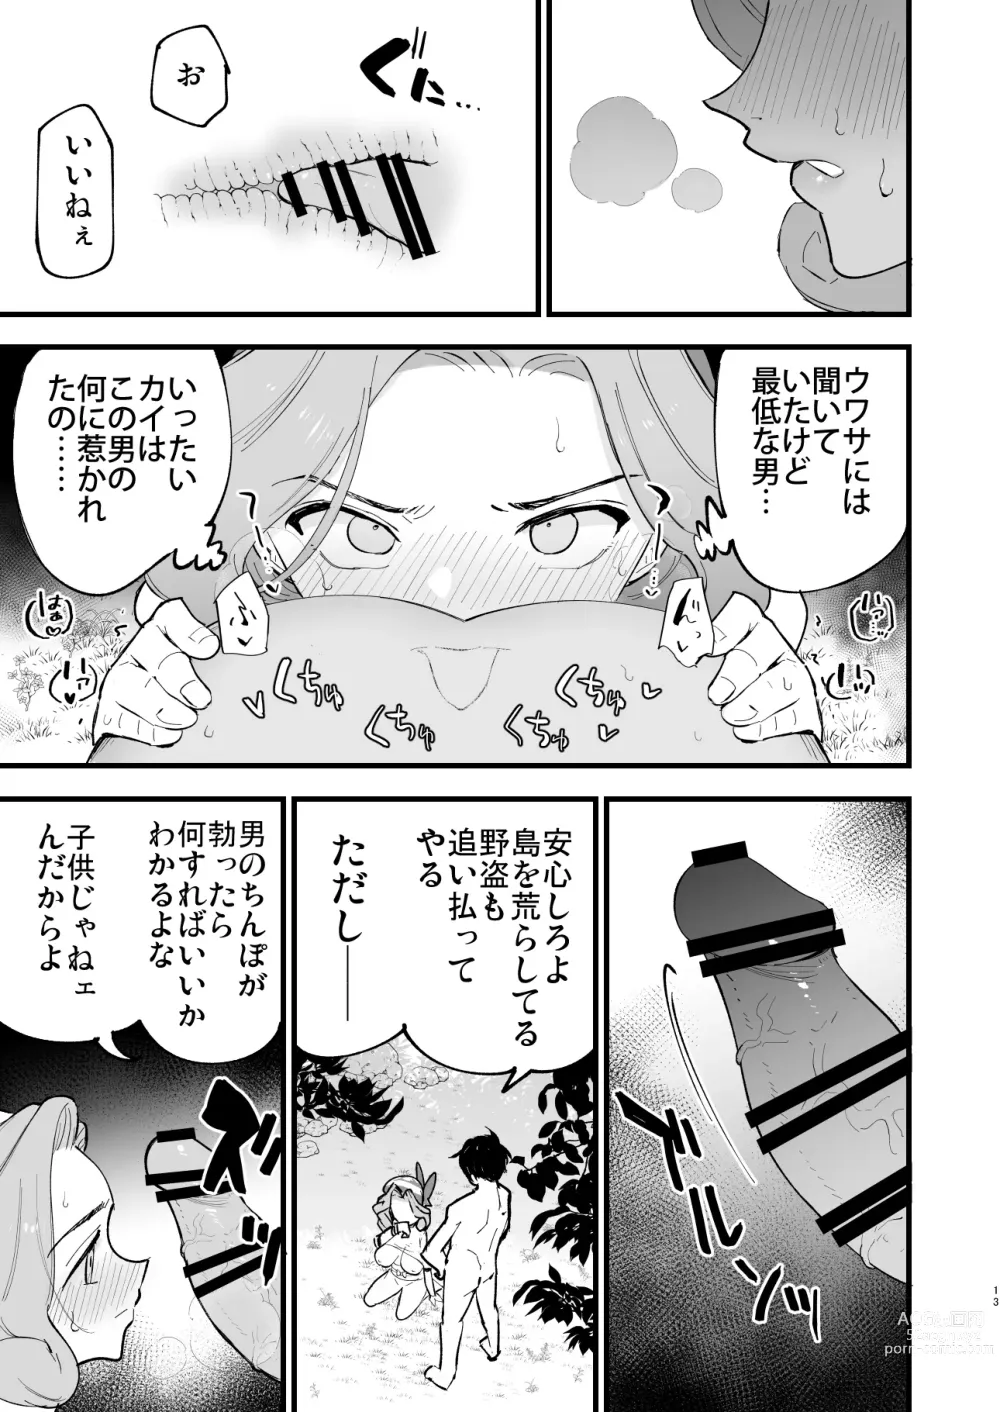 Page 13 of doujinshi Hisui Tensei-roku 3